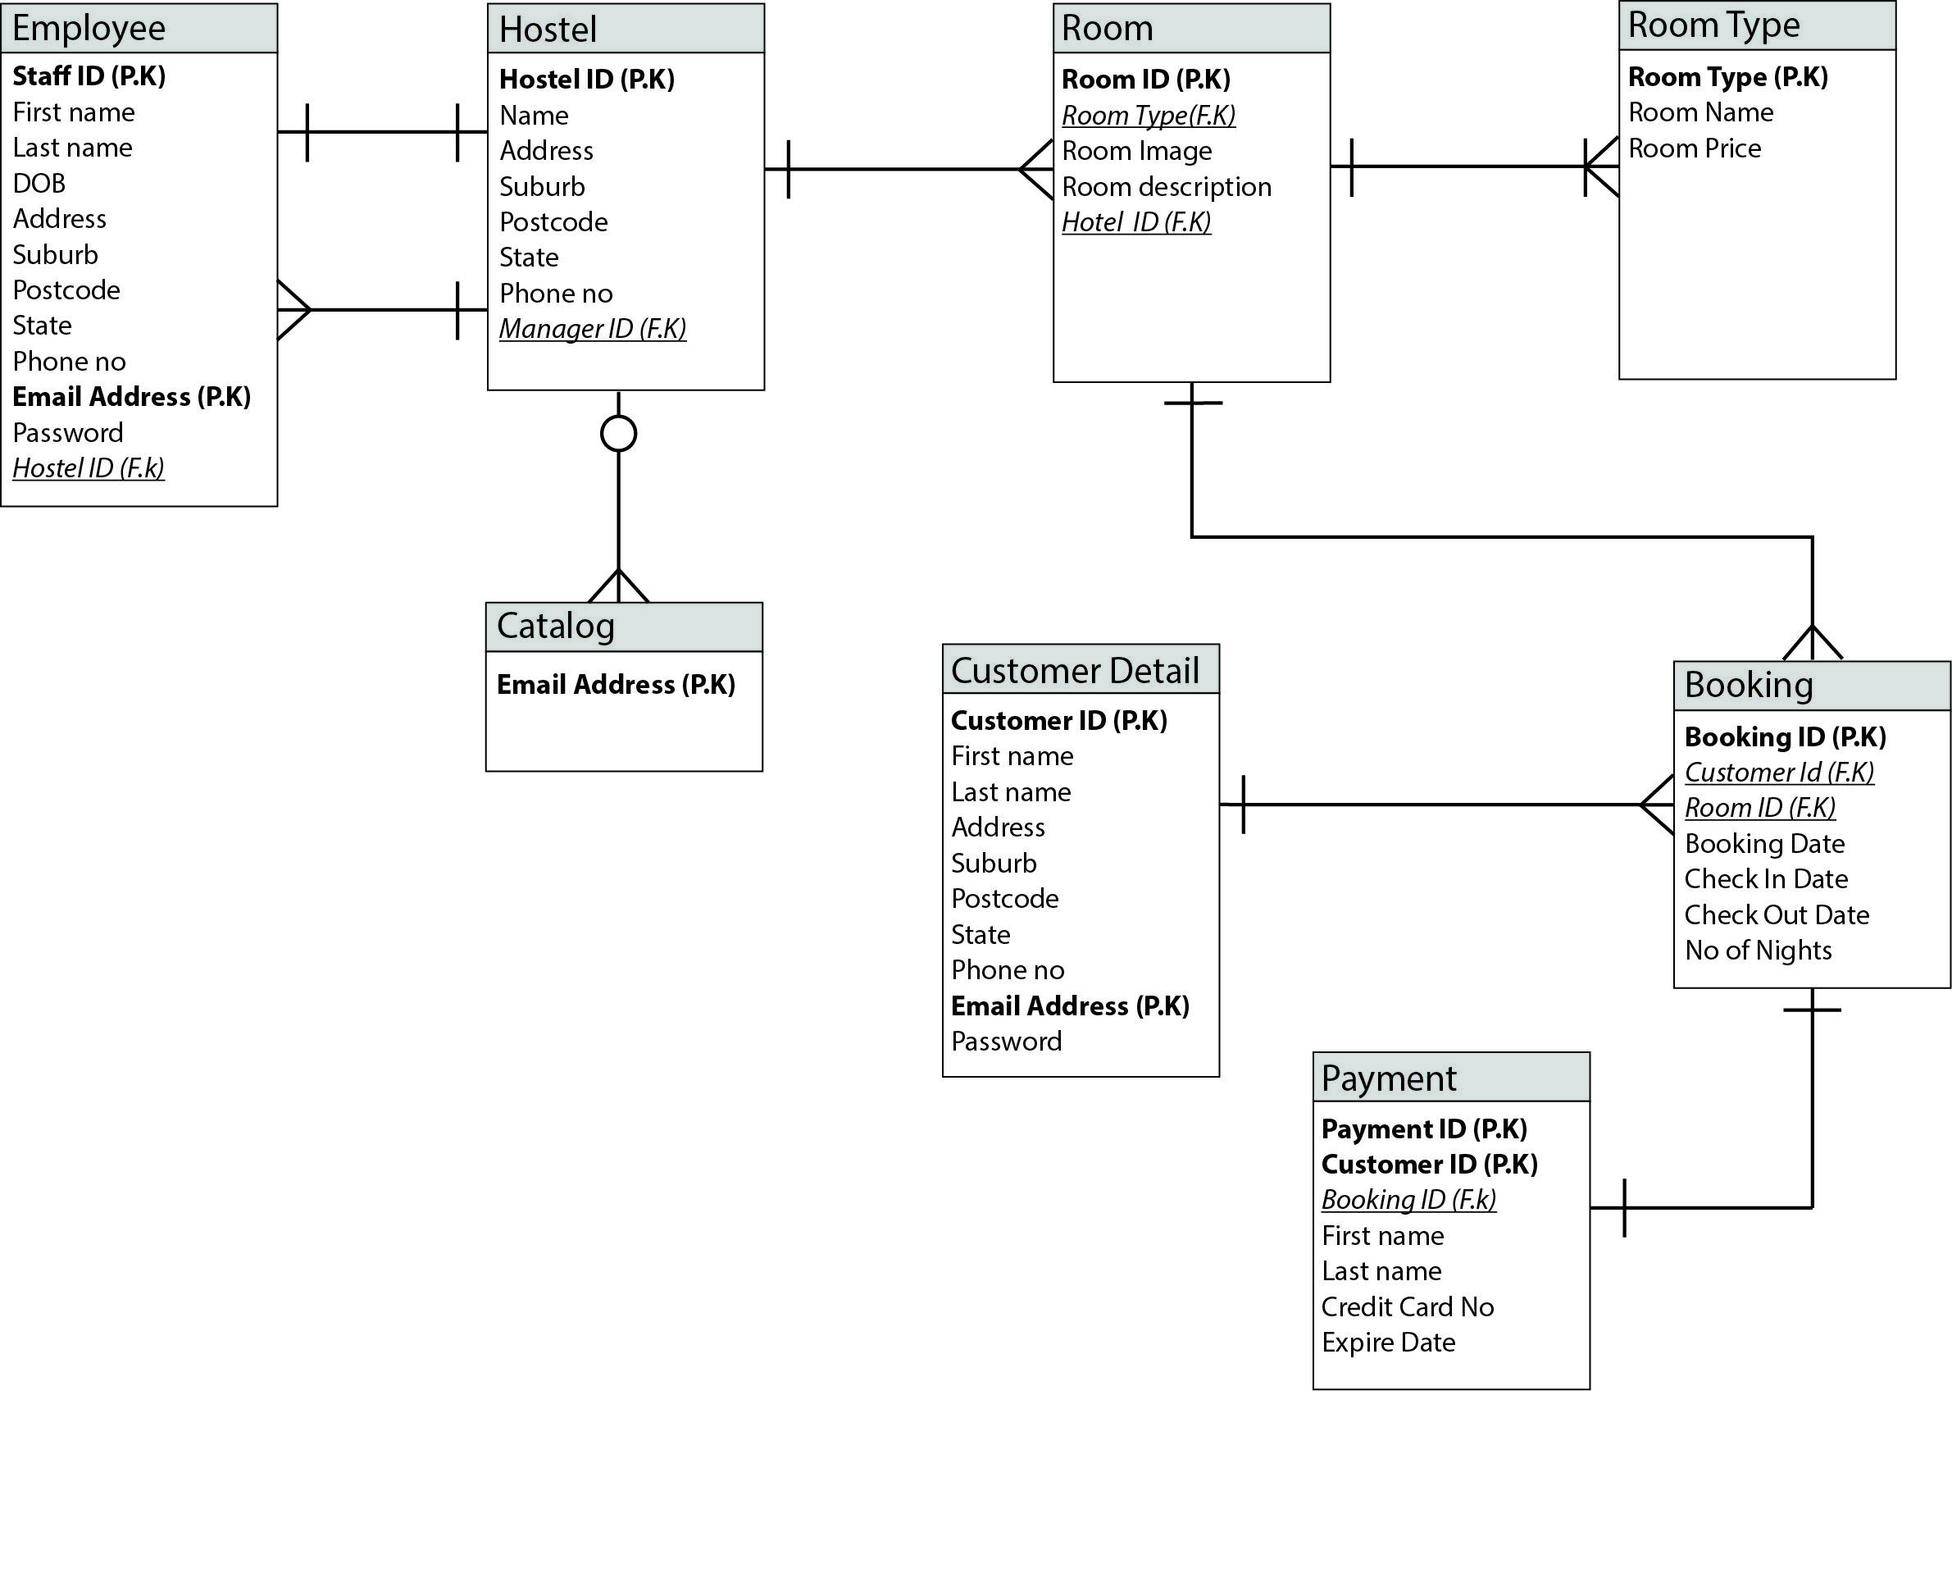 Online Hostel Management System Er Diagram - Database within Eer Diagram Online